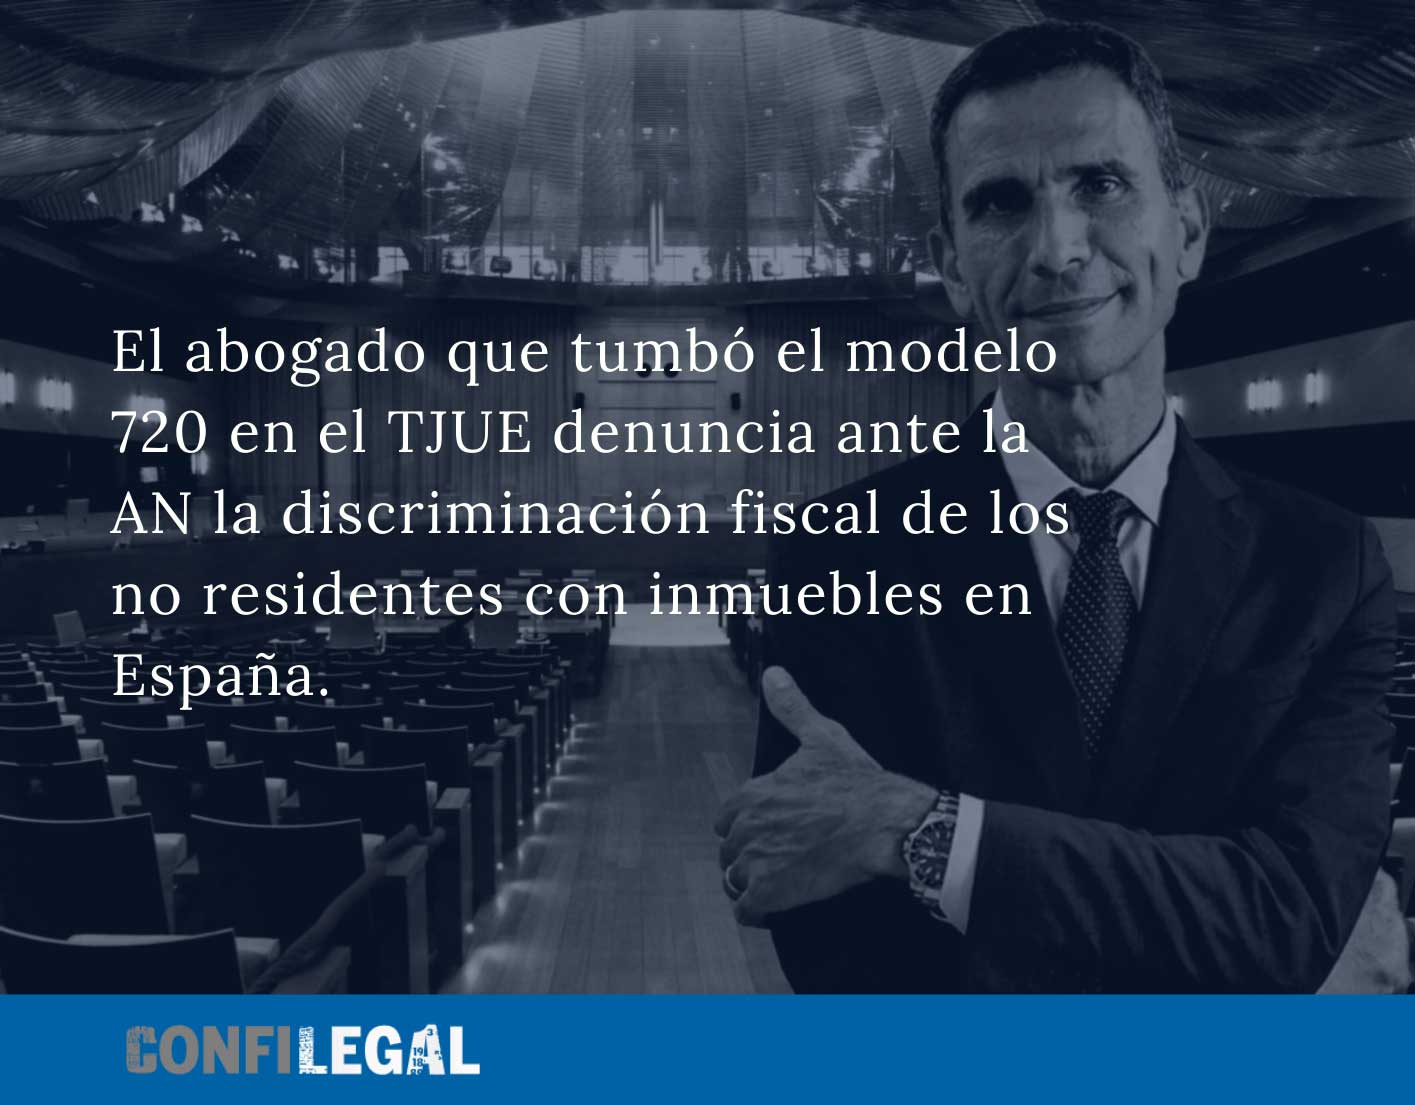 El abogado que tumbó el modelo 720 en el TJUE denuncia ante la AN la discriminación fiscal de los no residentes con inmuebles en España